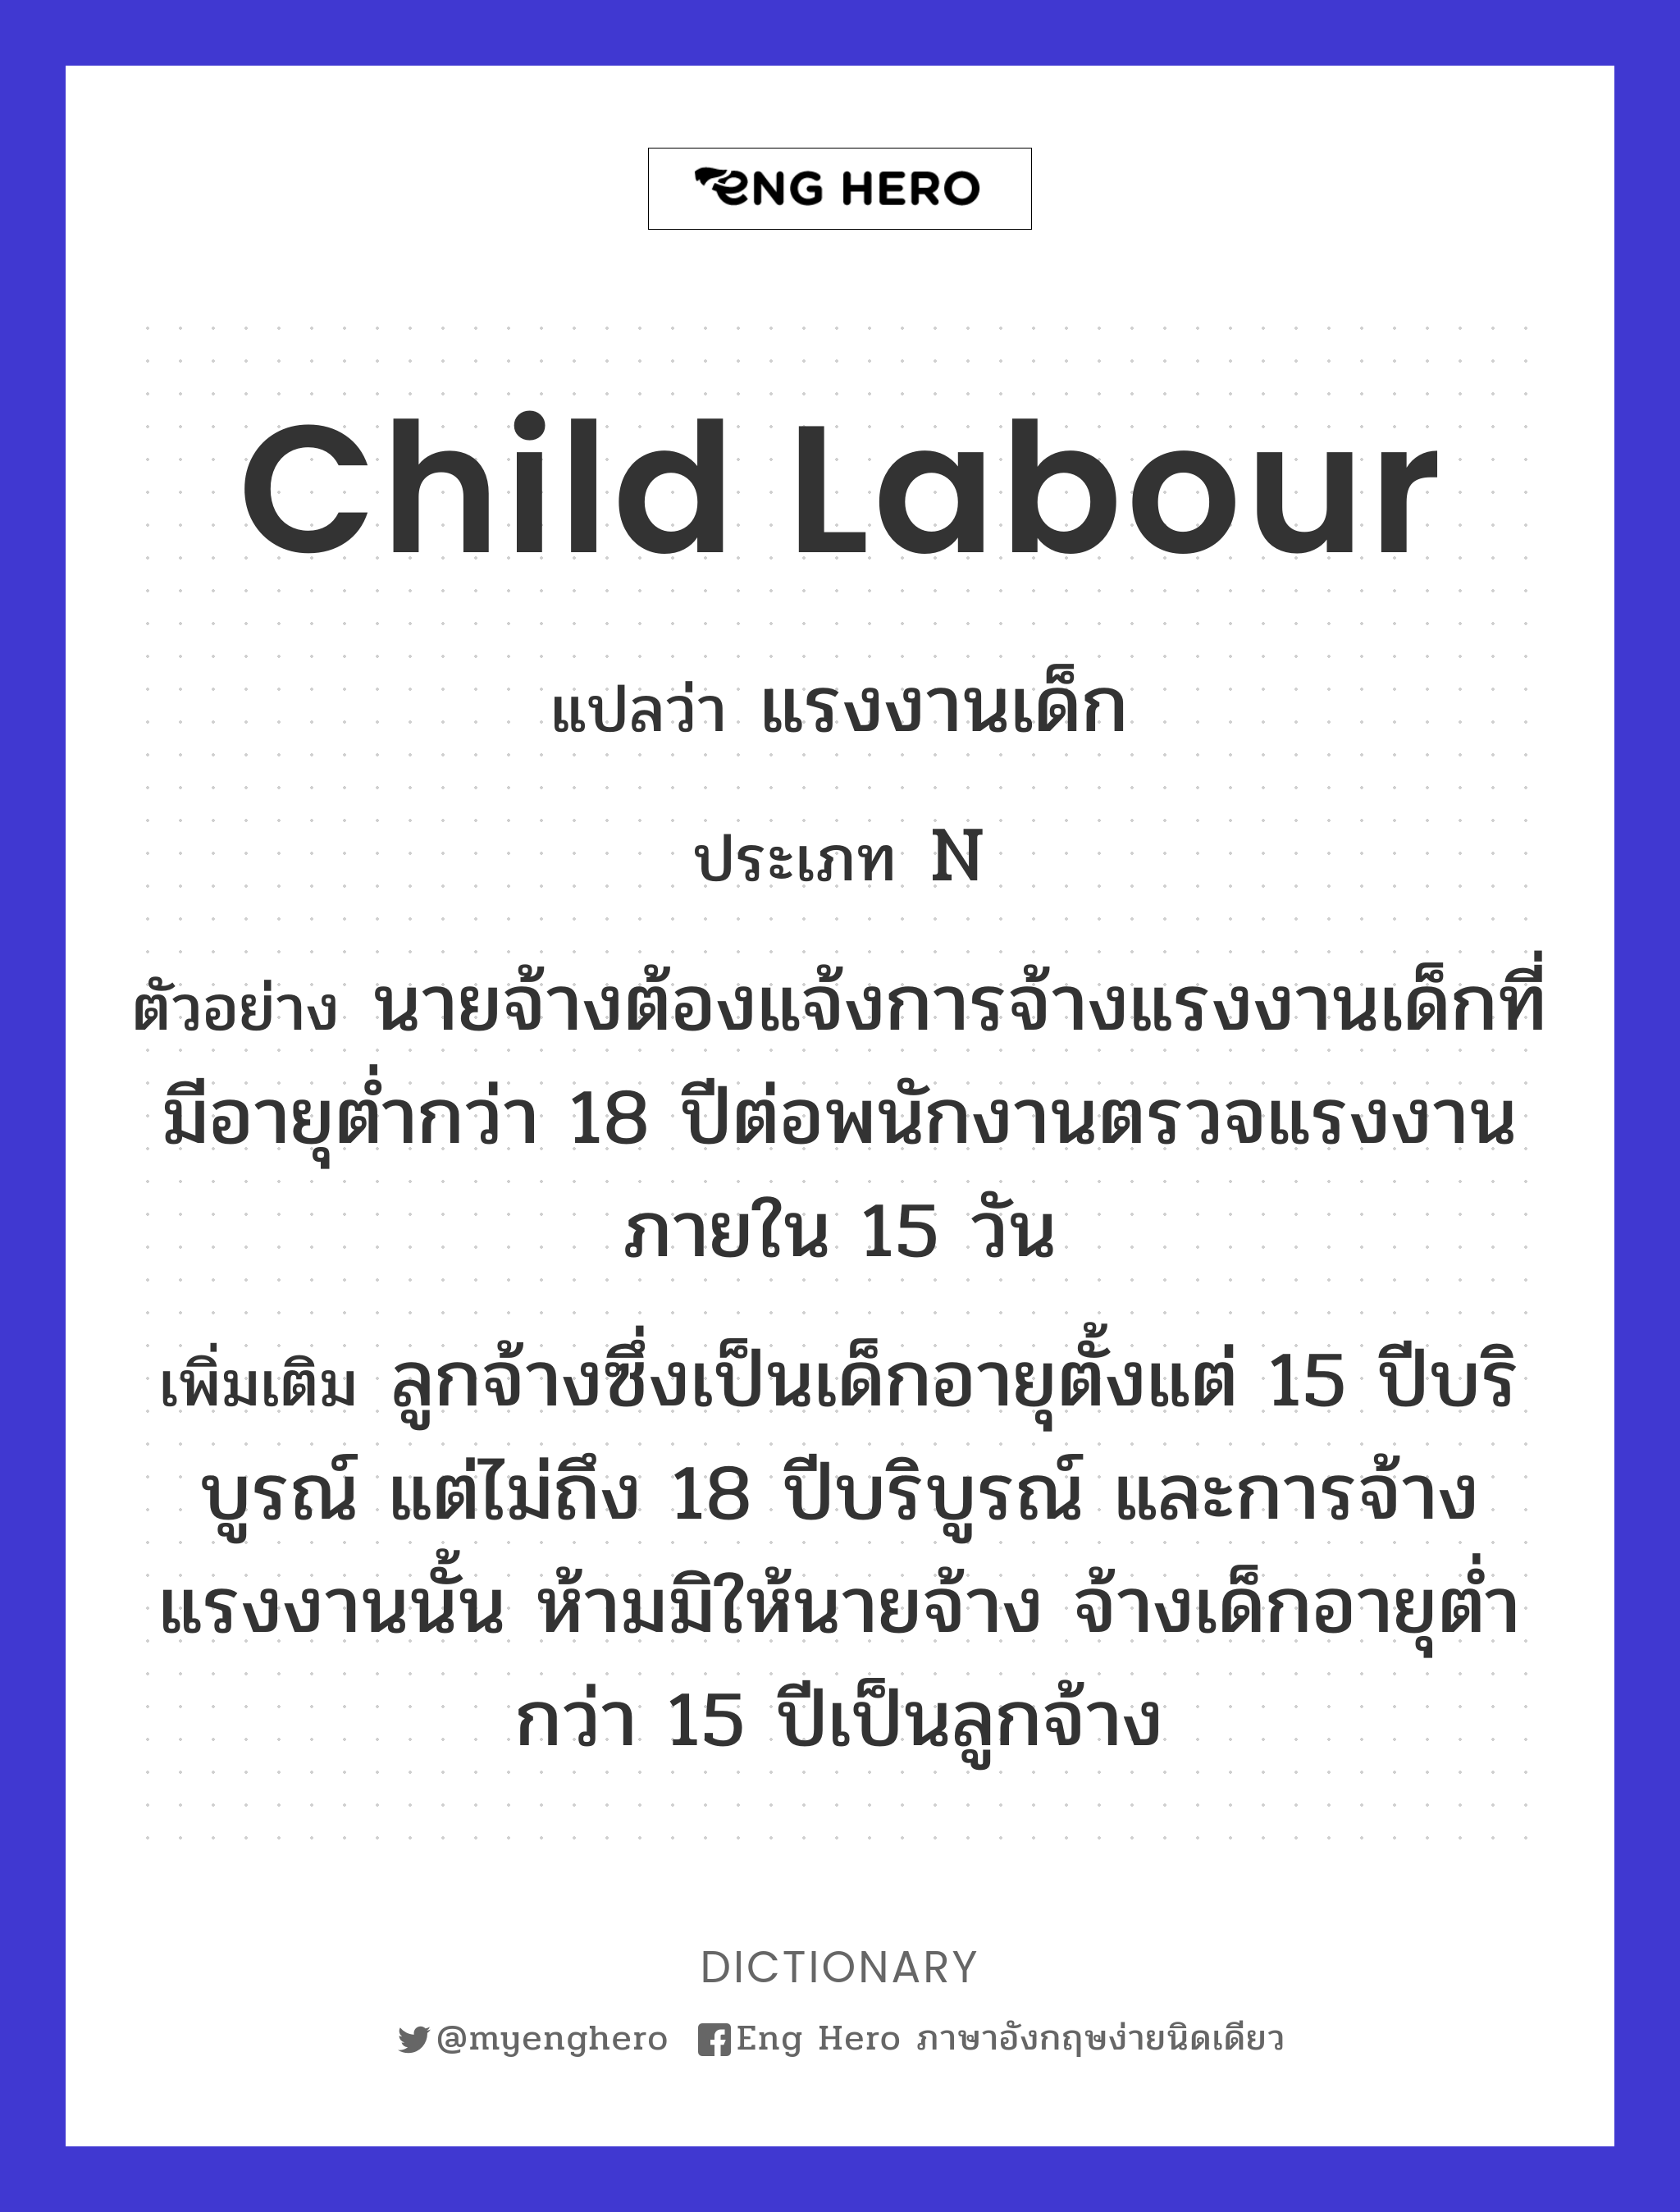 child labour